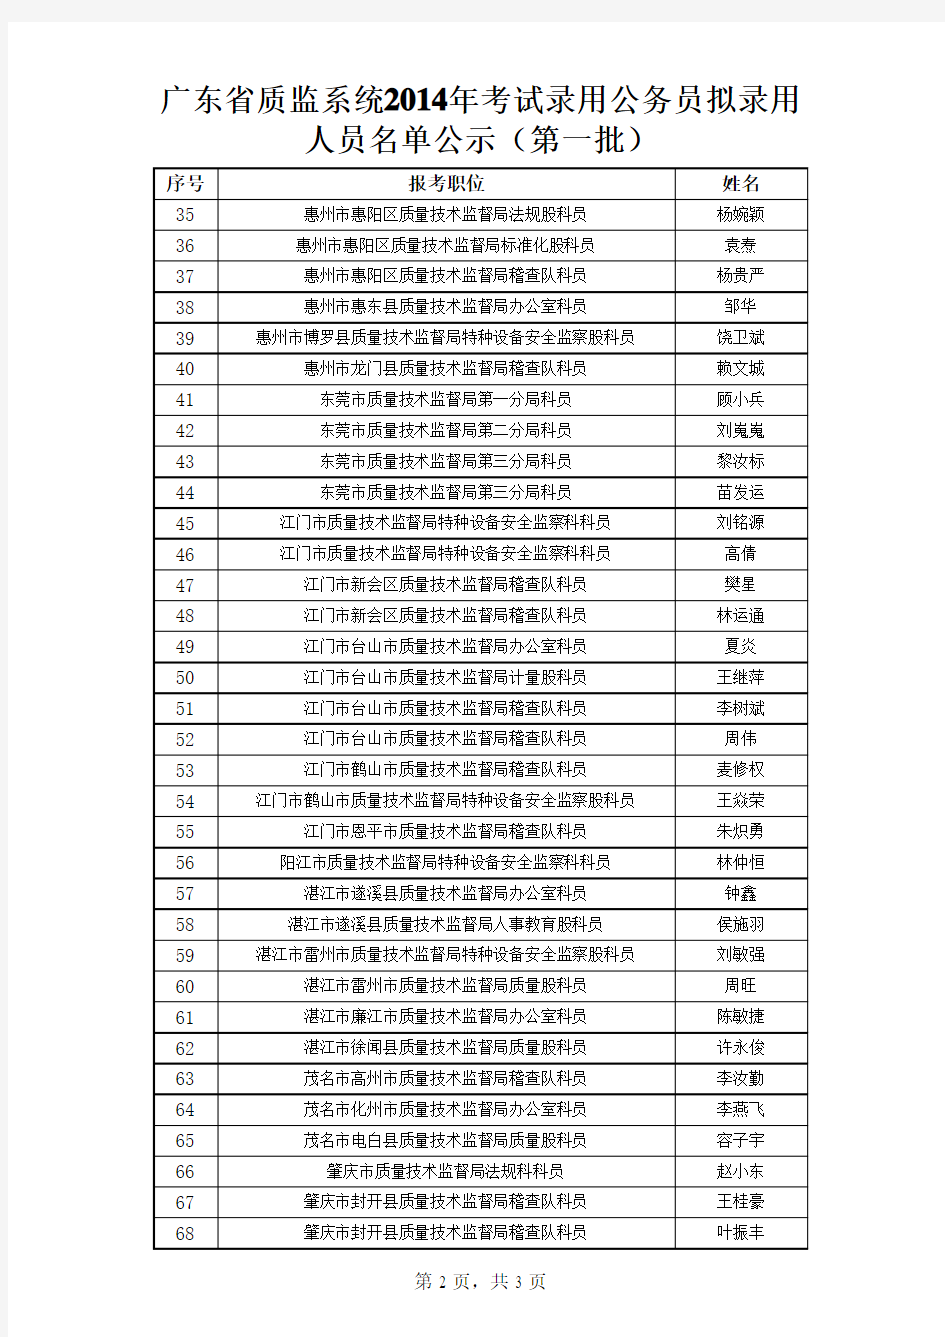 公示人员名单 - 欢迎光临广东省质量技术监督局!